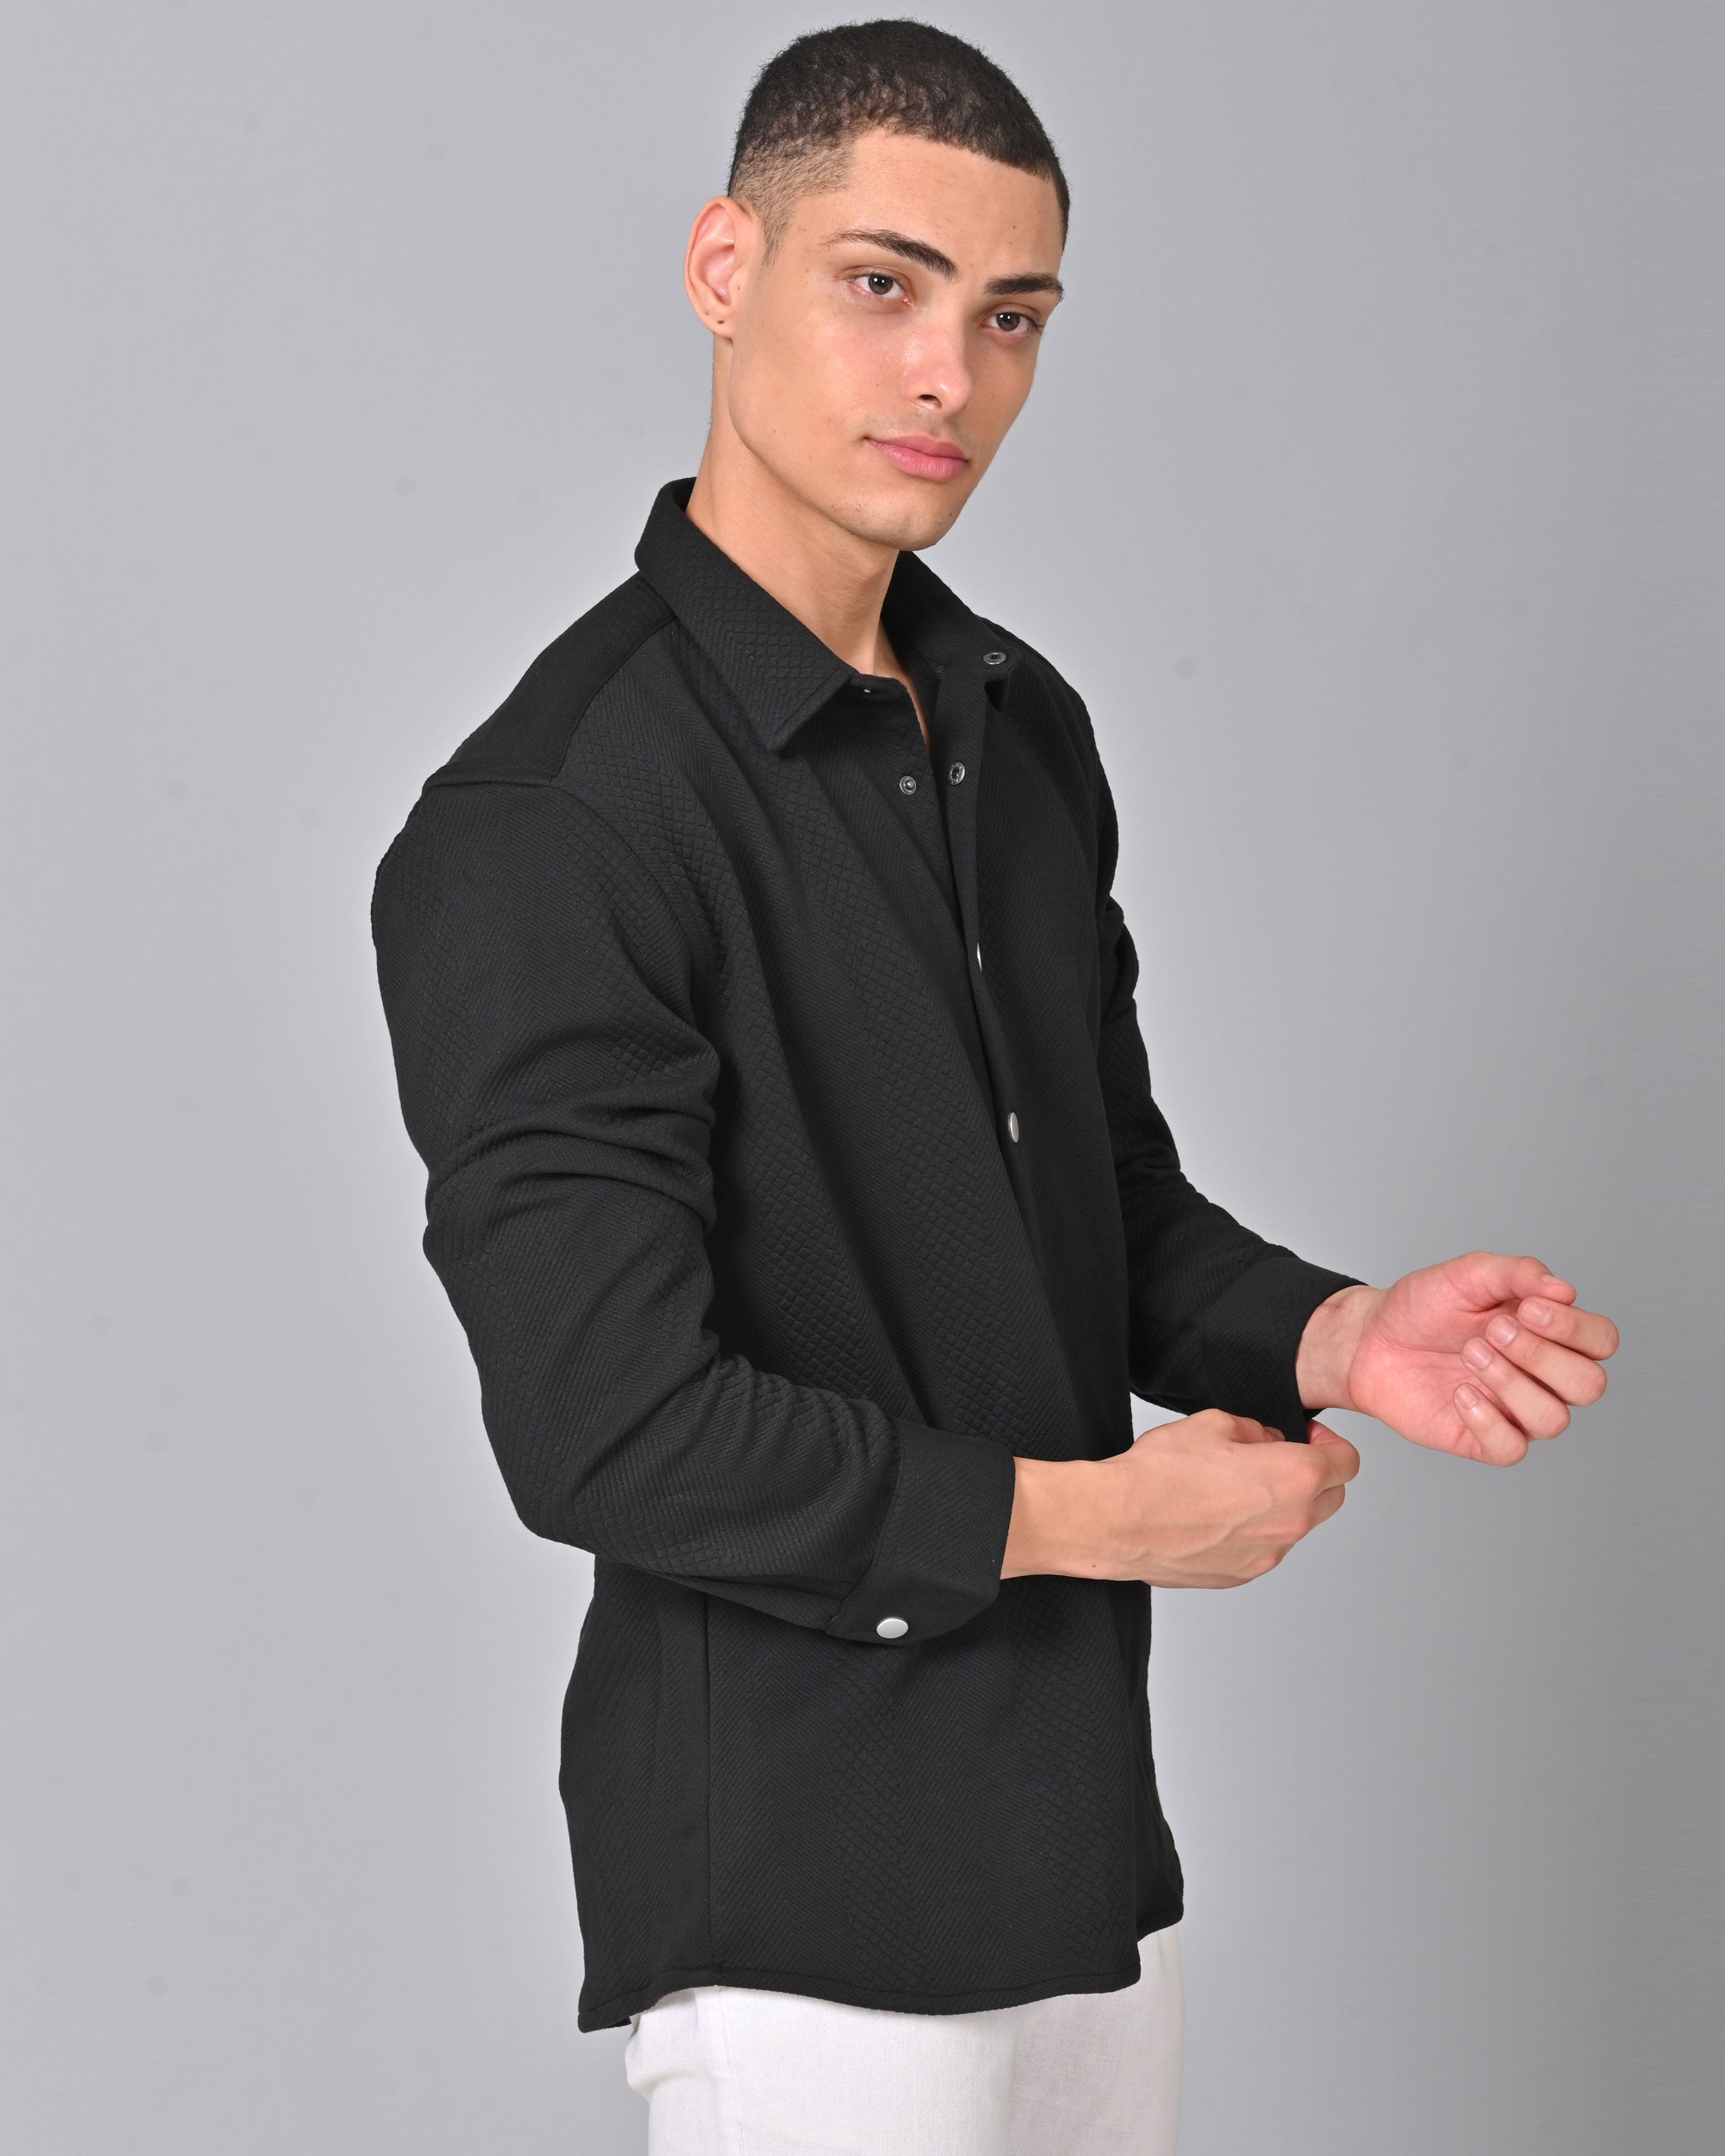 Men's Black Knit Cotton Shirt Online